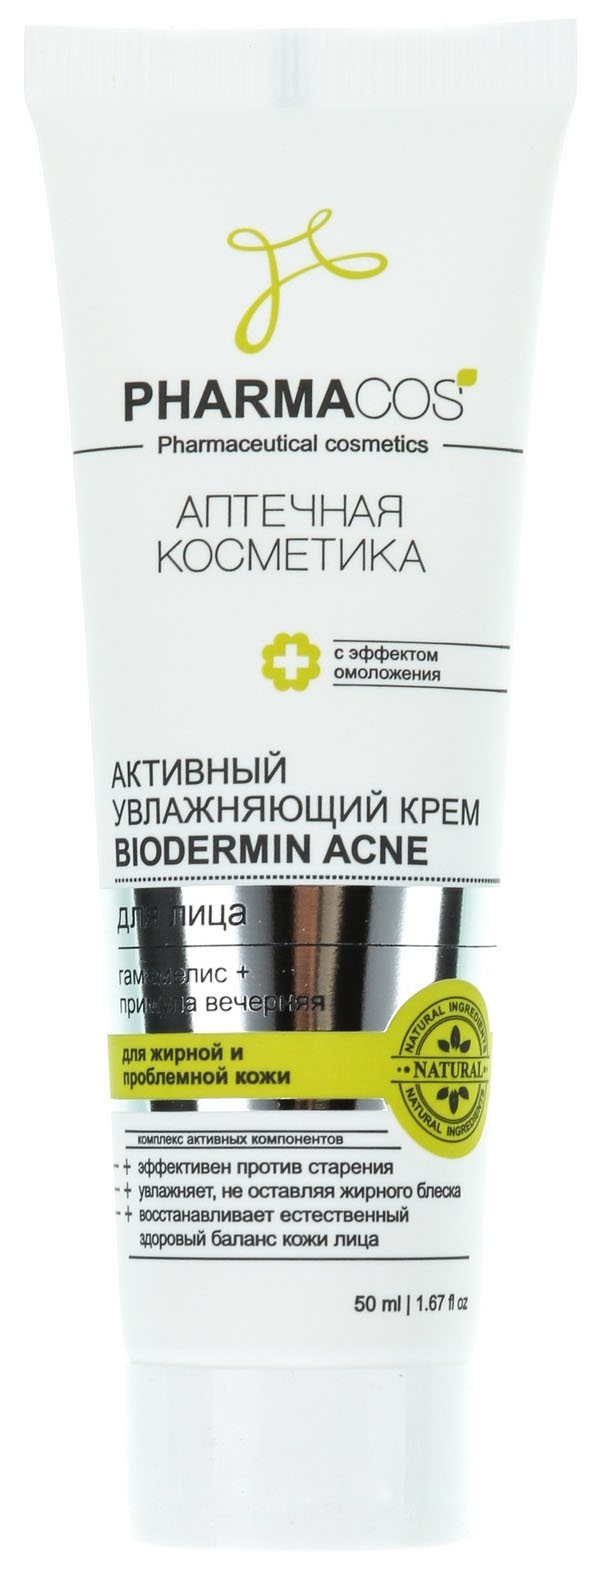 Крем для лица Витэкс Pharmacos Biodermin Acne 50 мл invit сыворотка для лица anti acne с гликолевой кислотой 2% и саркозином 30 0